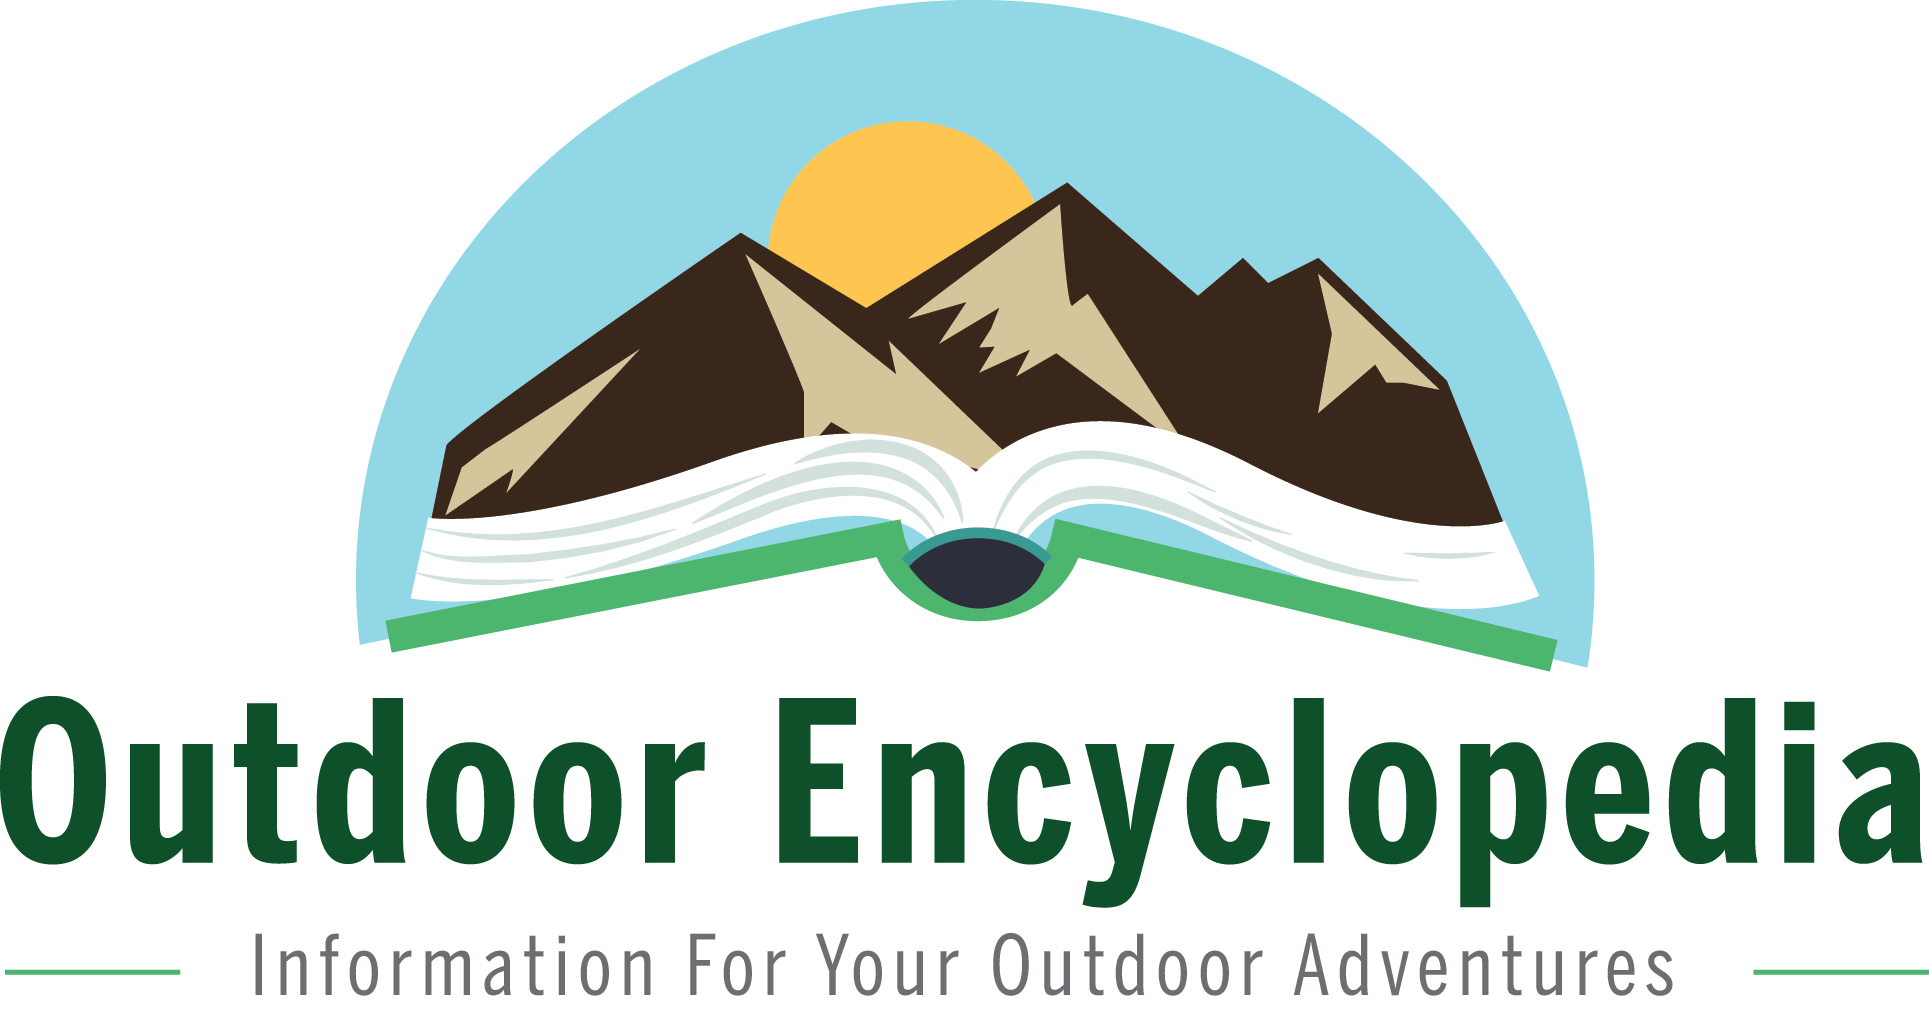 Outdoor Encyclopedia